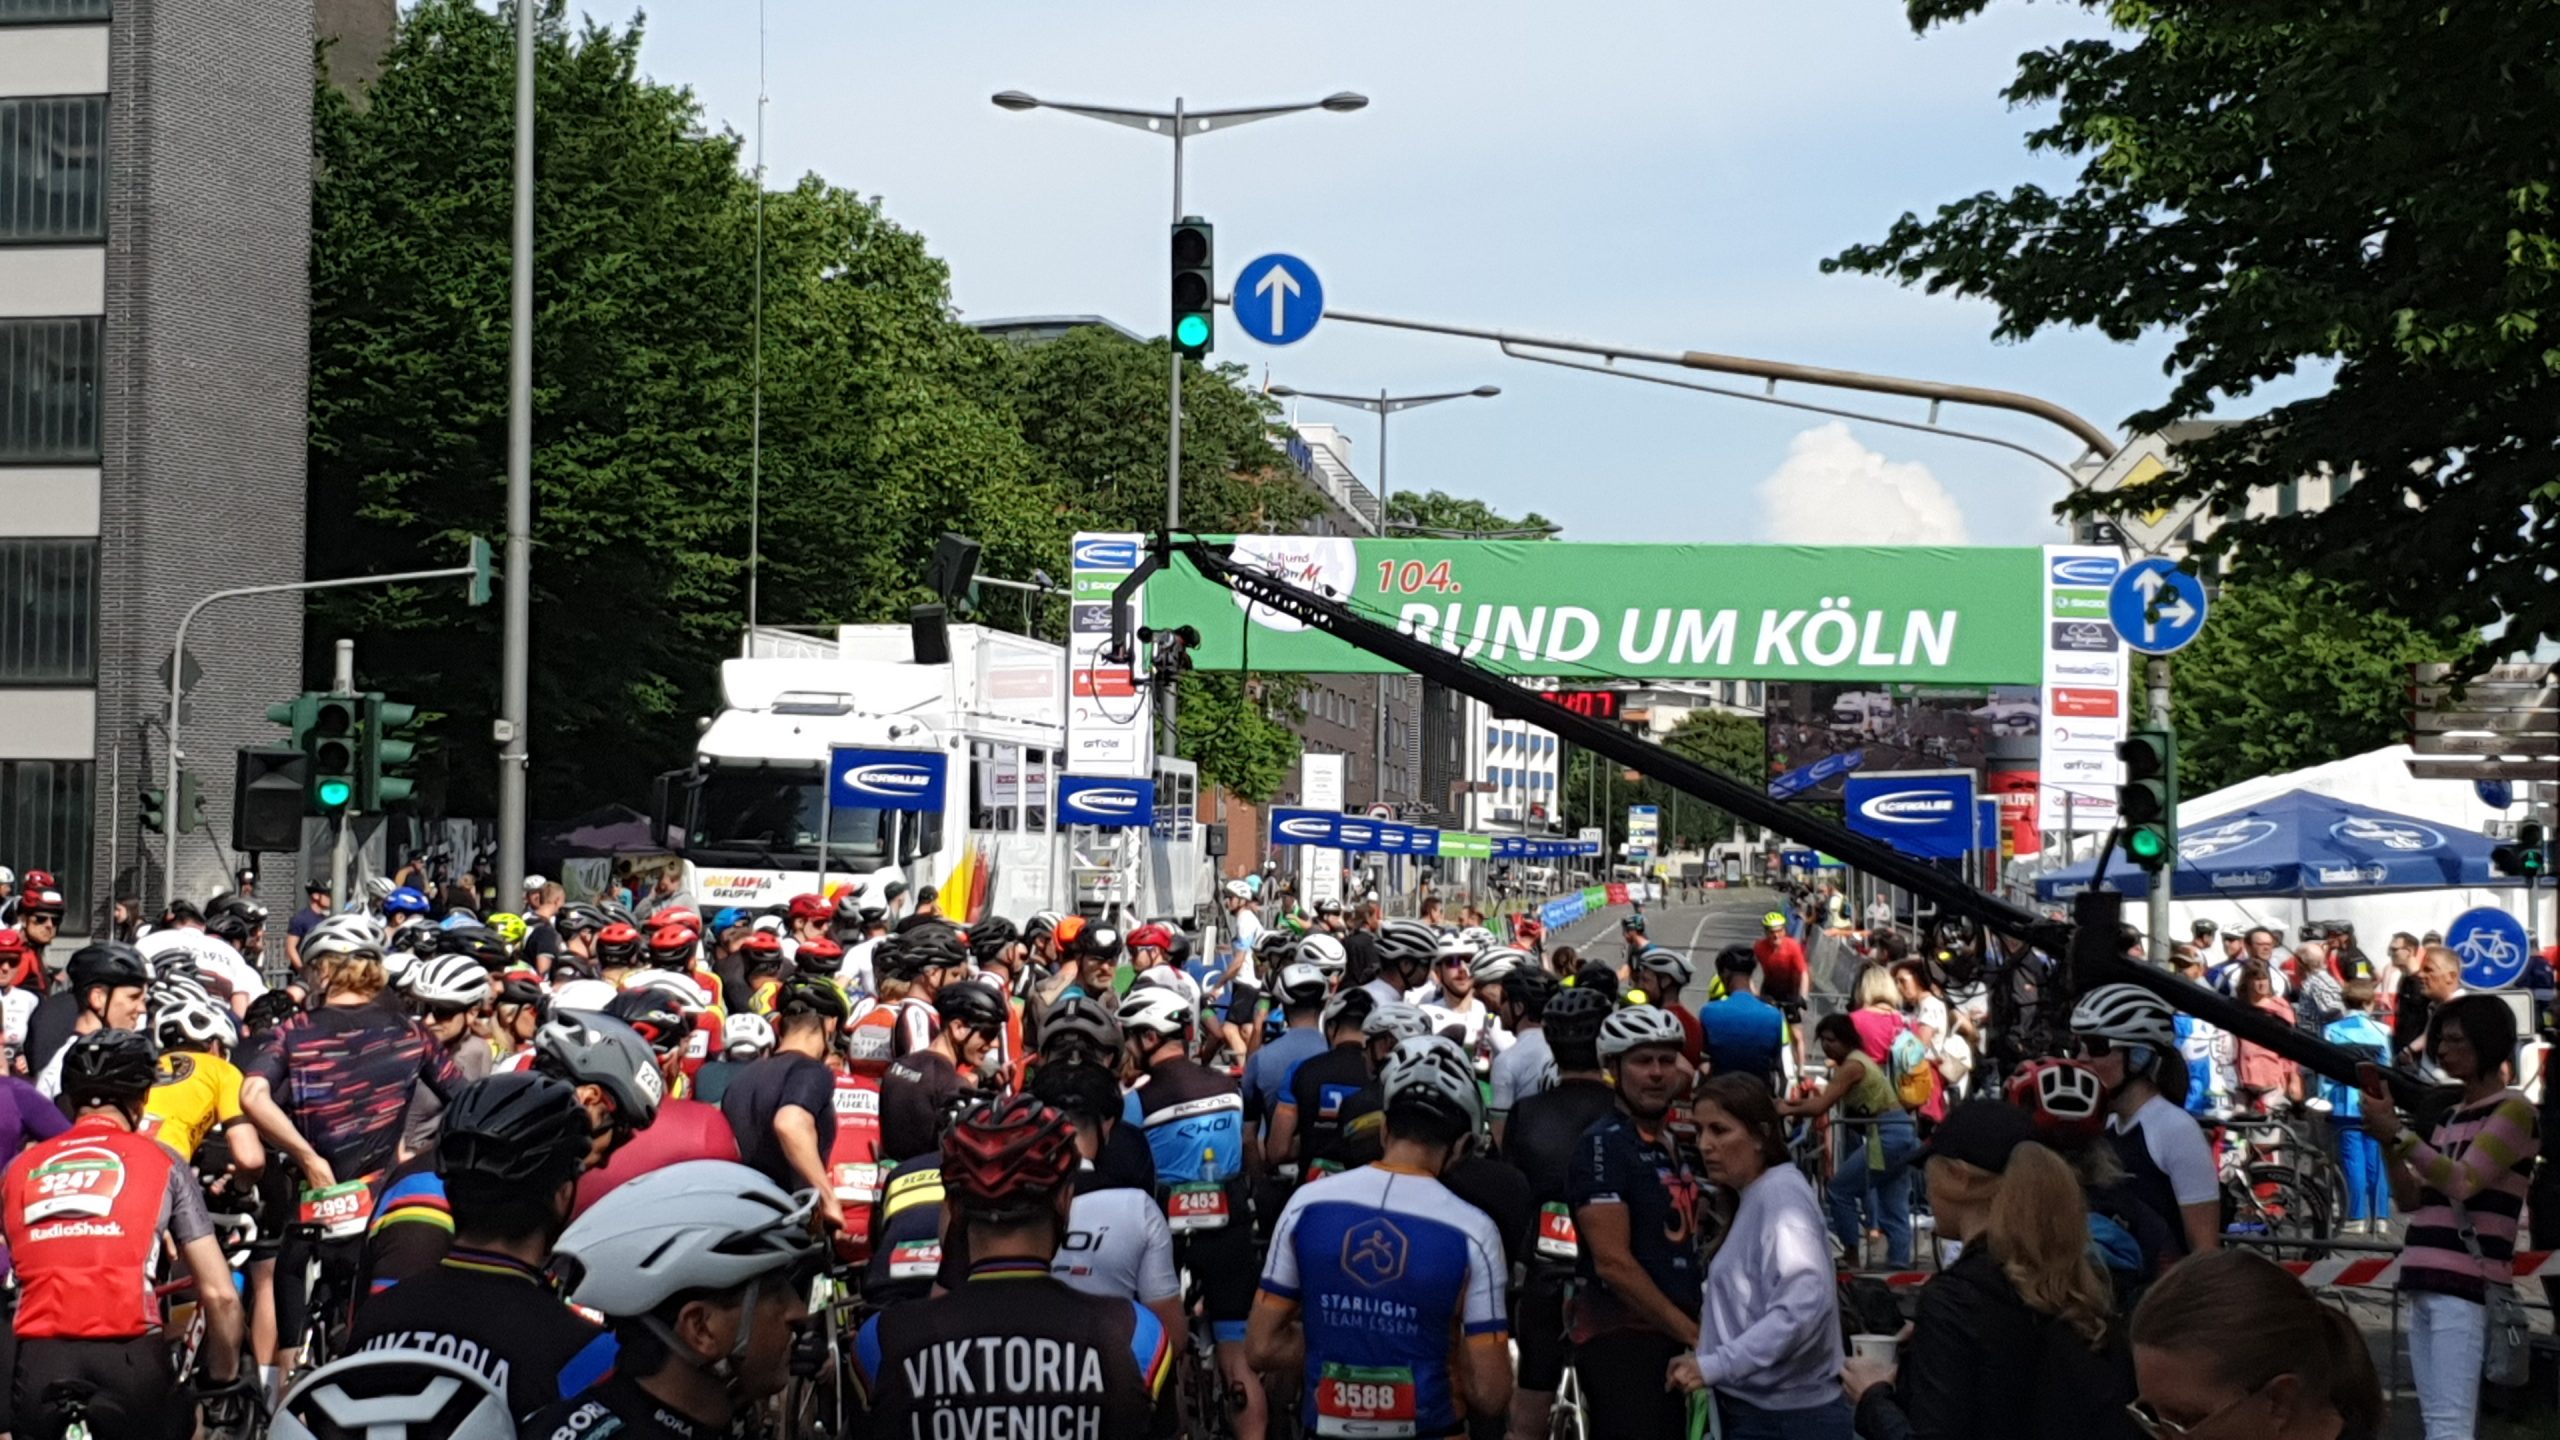 Radrennen "Rund um Köln" 2022 - Start-Ziel